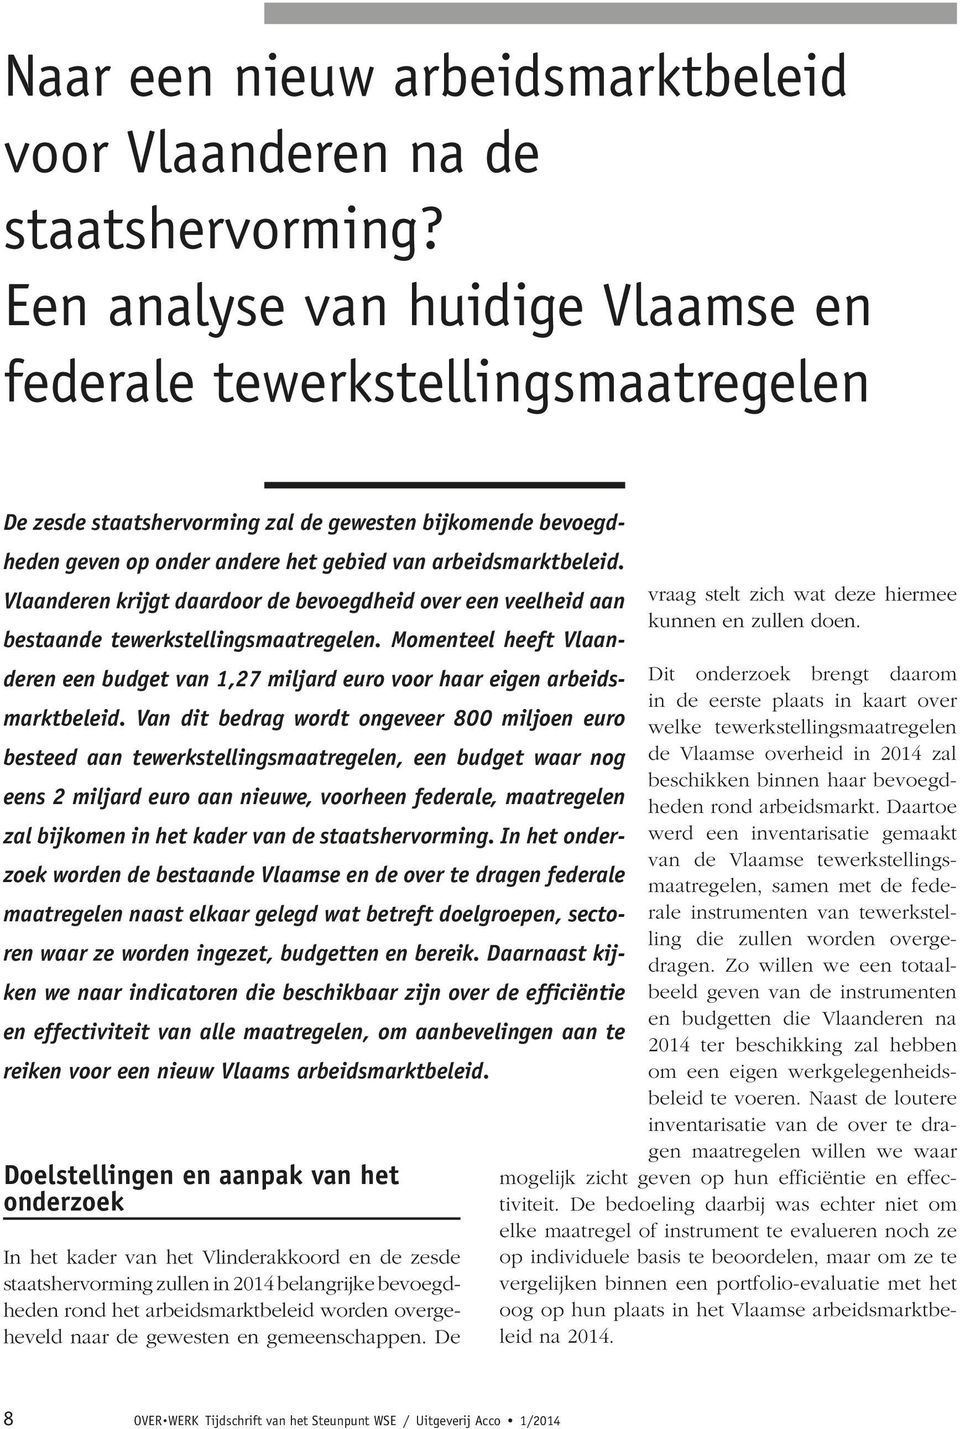 Vlaanderen krijgt daardoor de bevoegdheid over een veelheid aan bestaande tewerkstellingsmaatregelen. Momenteel heeft Vlaanderen een budget van 1,27 miljard euro voor haar eigen arbeidsmarktbeleid.